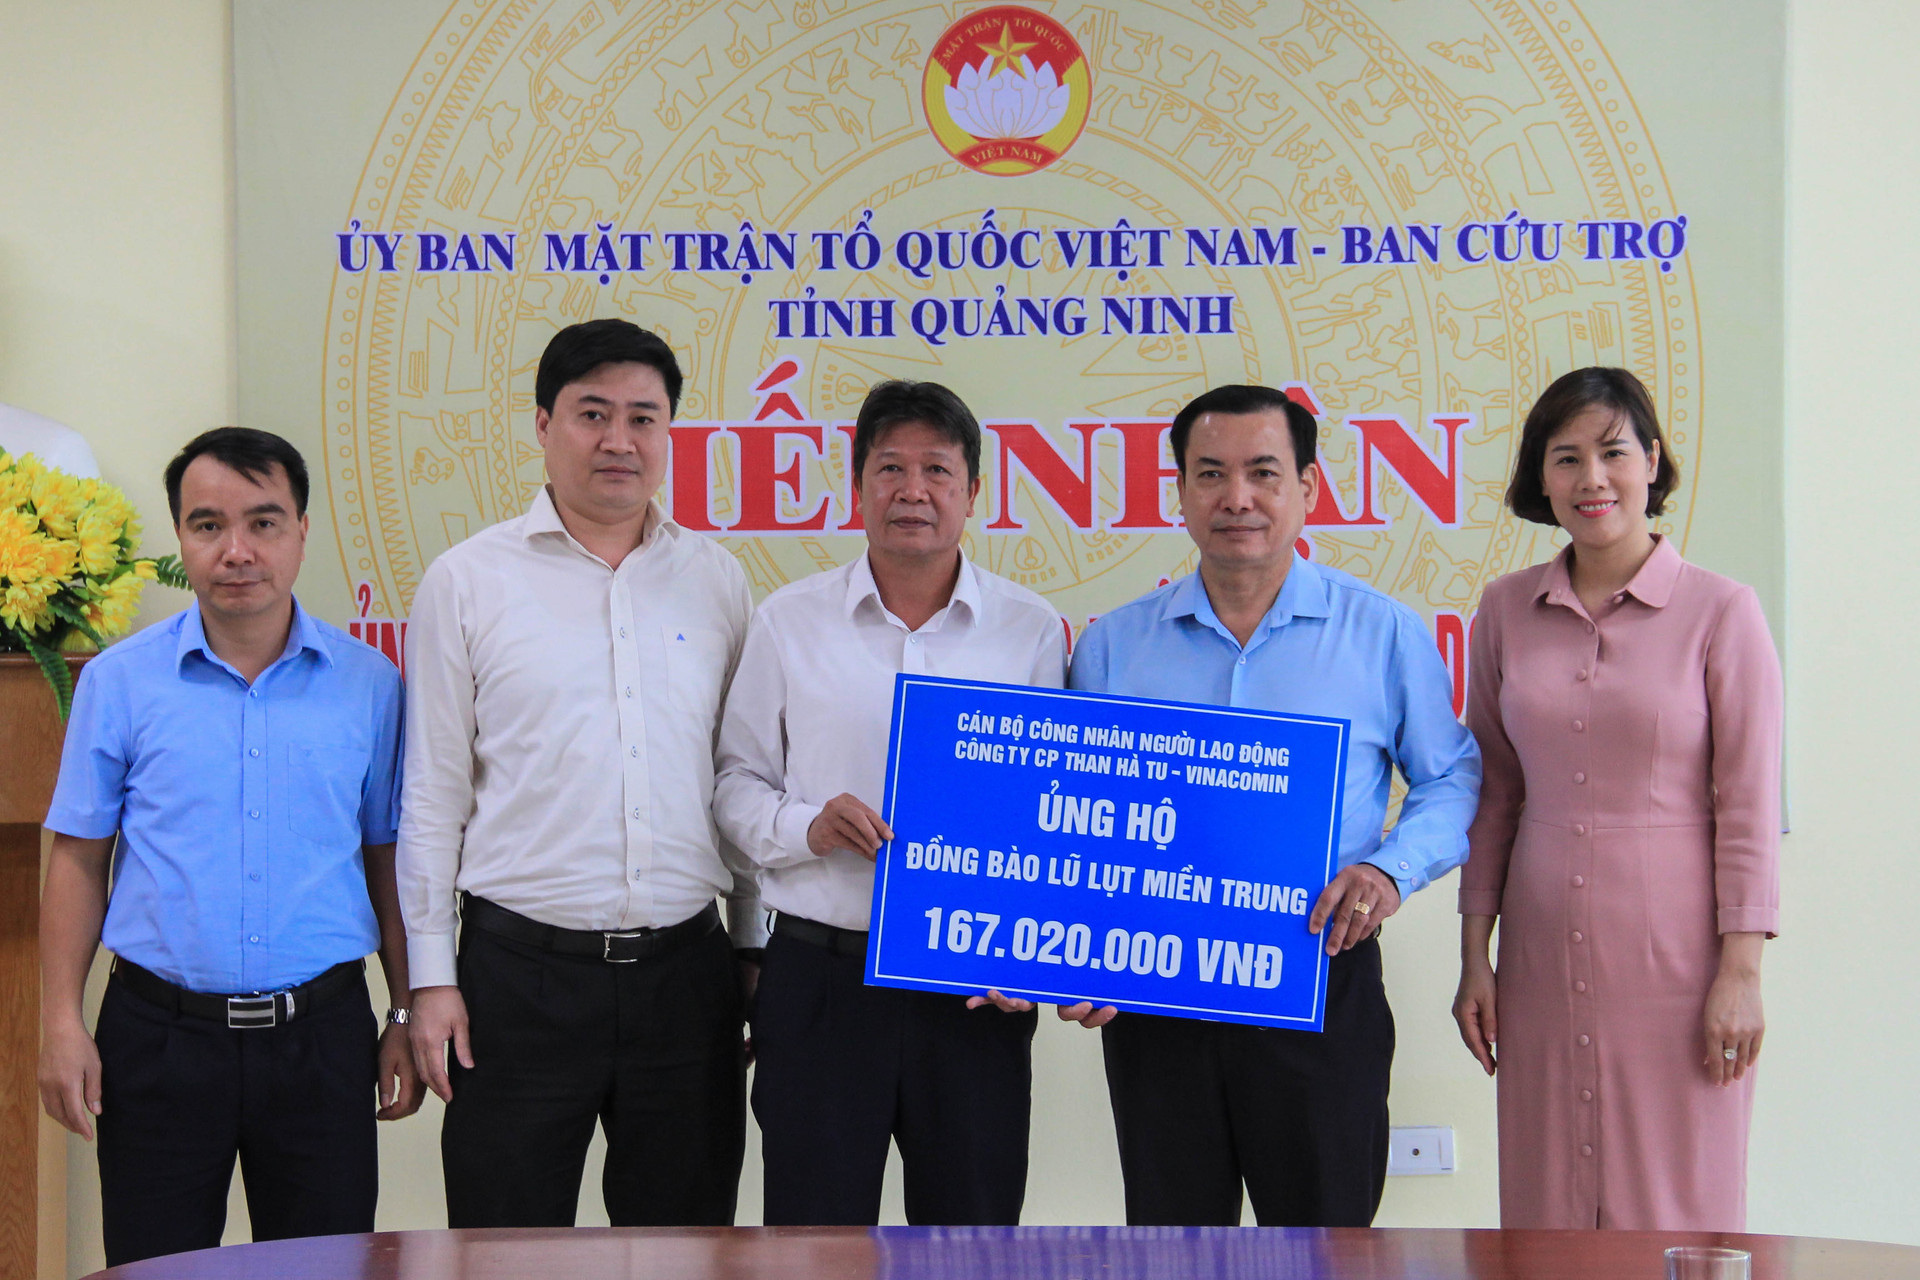 Ủy ban MTTQ tỉnh tiếp nhận ủng hộ, tháng 11/2020. Nguồn: Ủy ban MTTQ tỉnh Quảng Ninh.